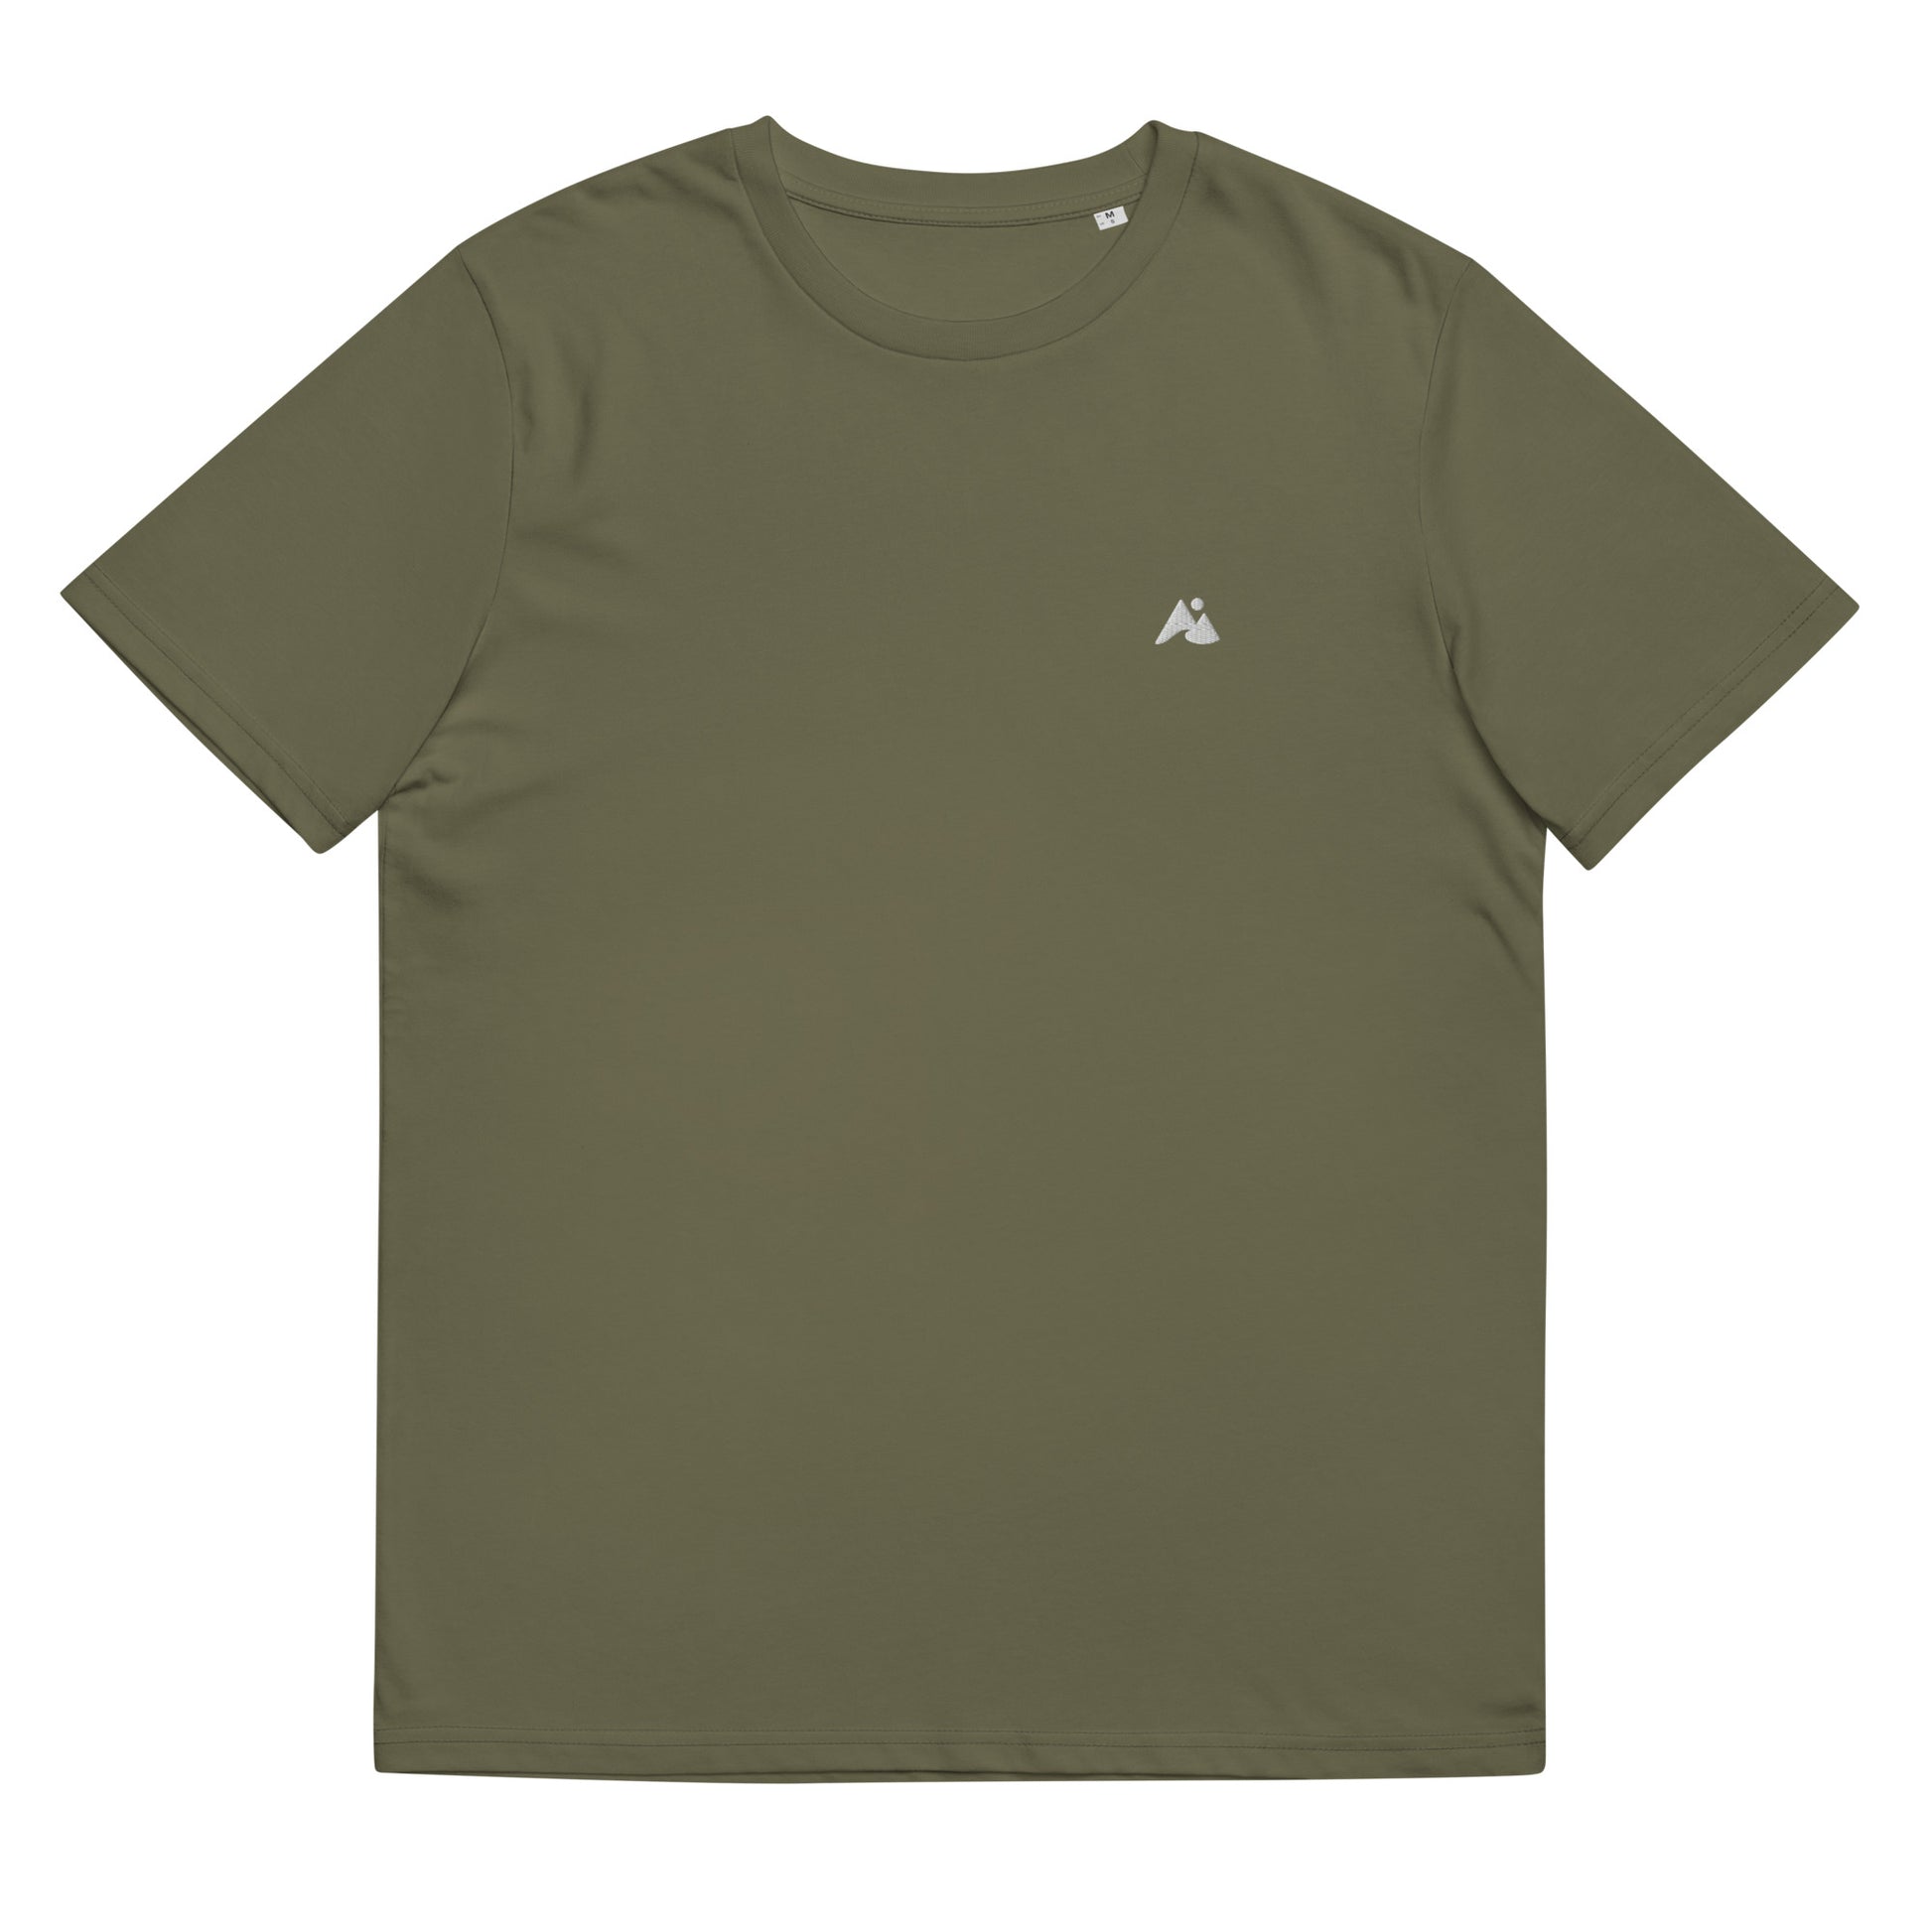 Il s'agit d'une image d'un t-shirt unisexe de couleur vert kaki. Le t-shirt est présenté sur un fond blanc. Il y a un petit logo montagne et vague blanc sur la poitrine côté cœur.